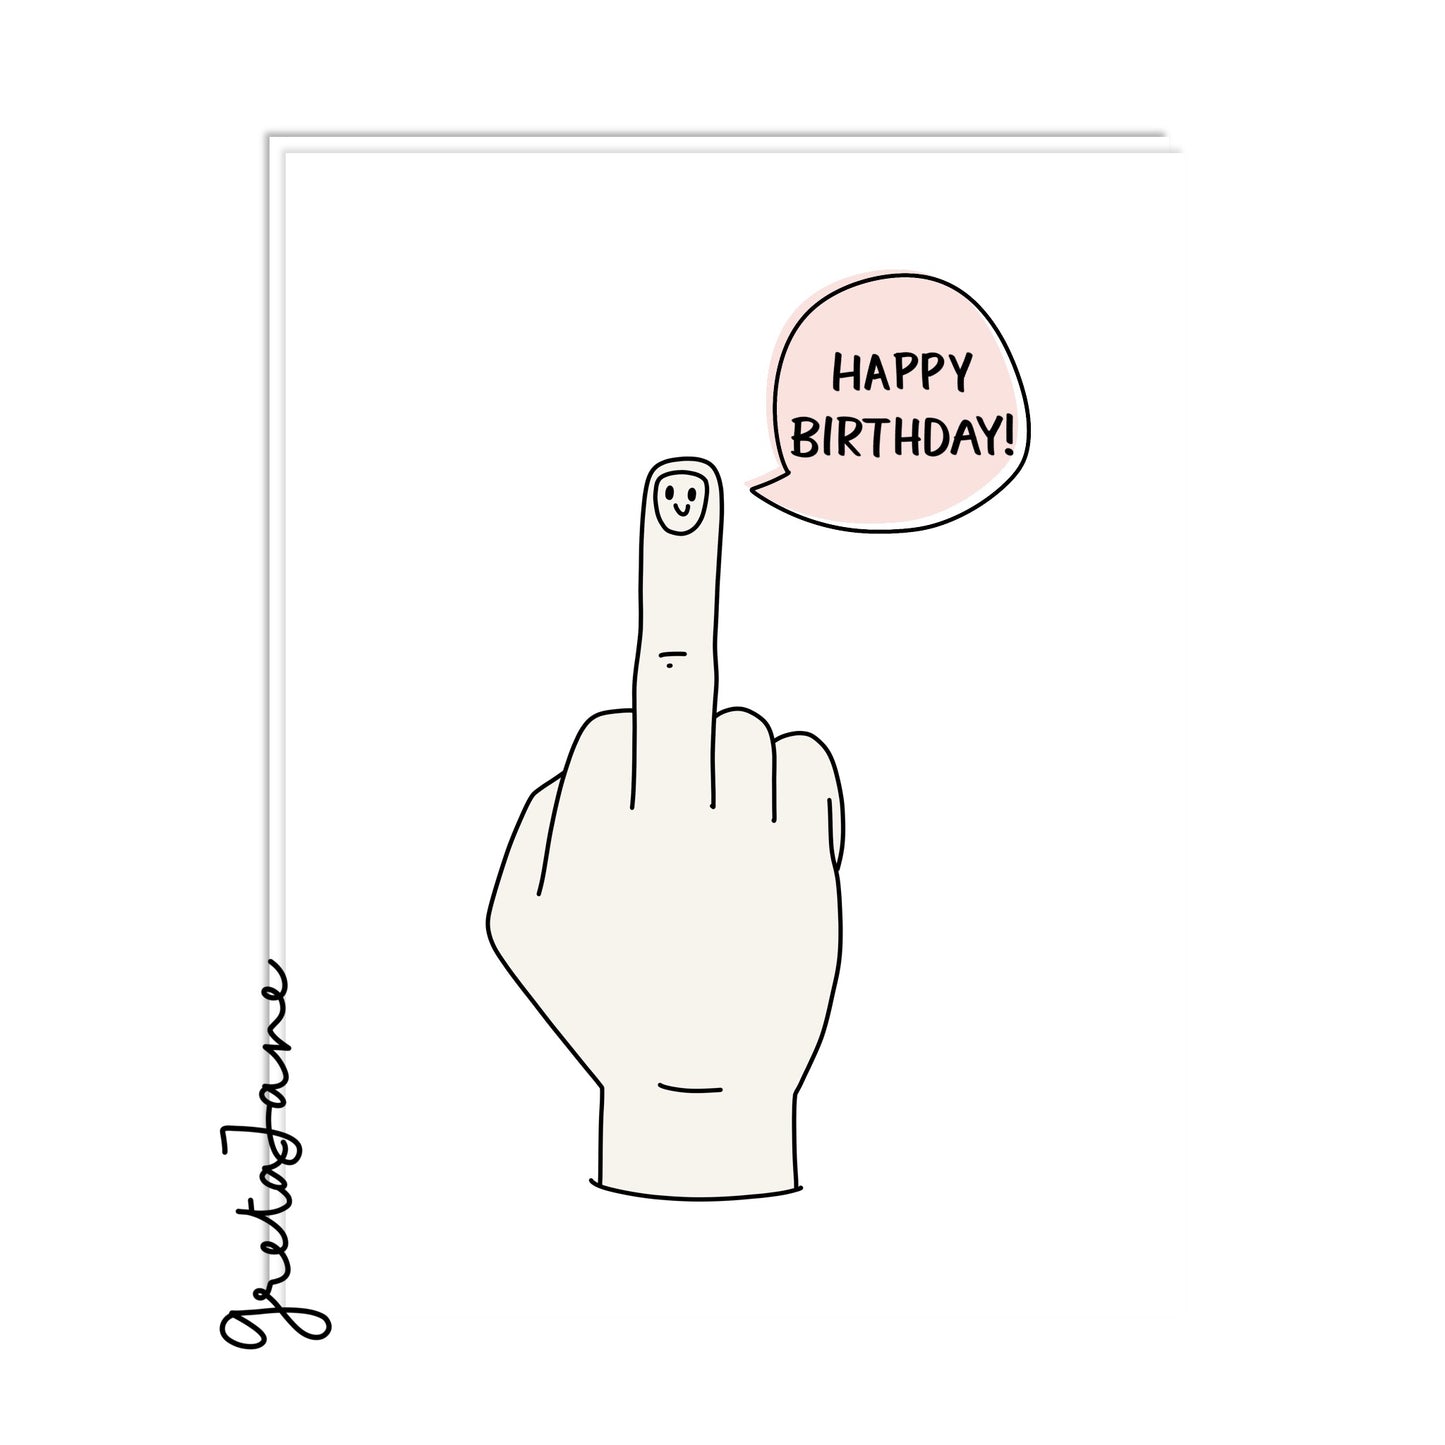 Happy Birthday, fucker! 